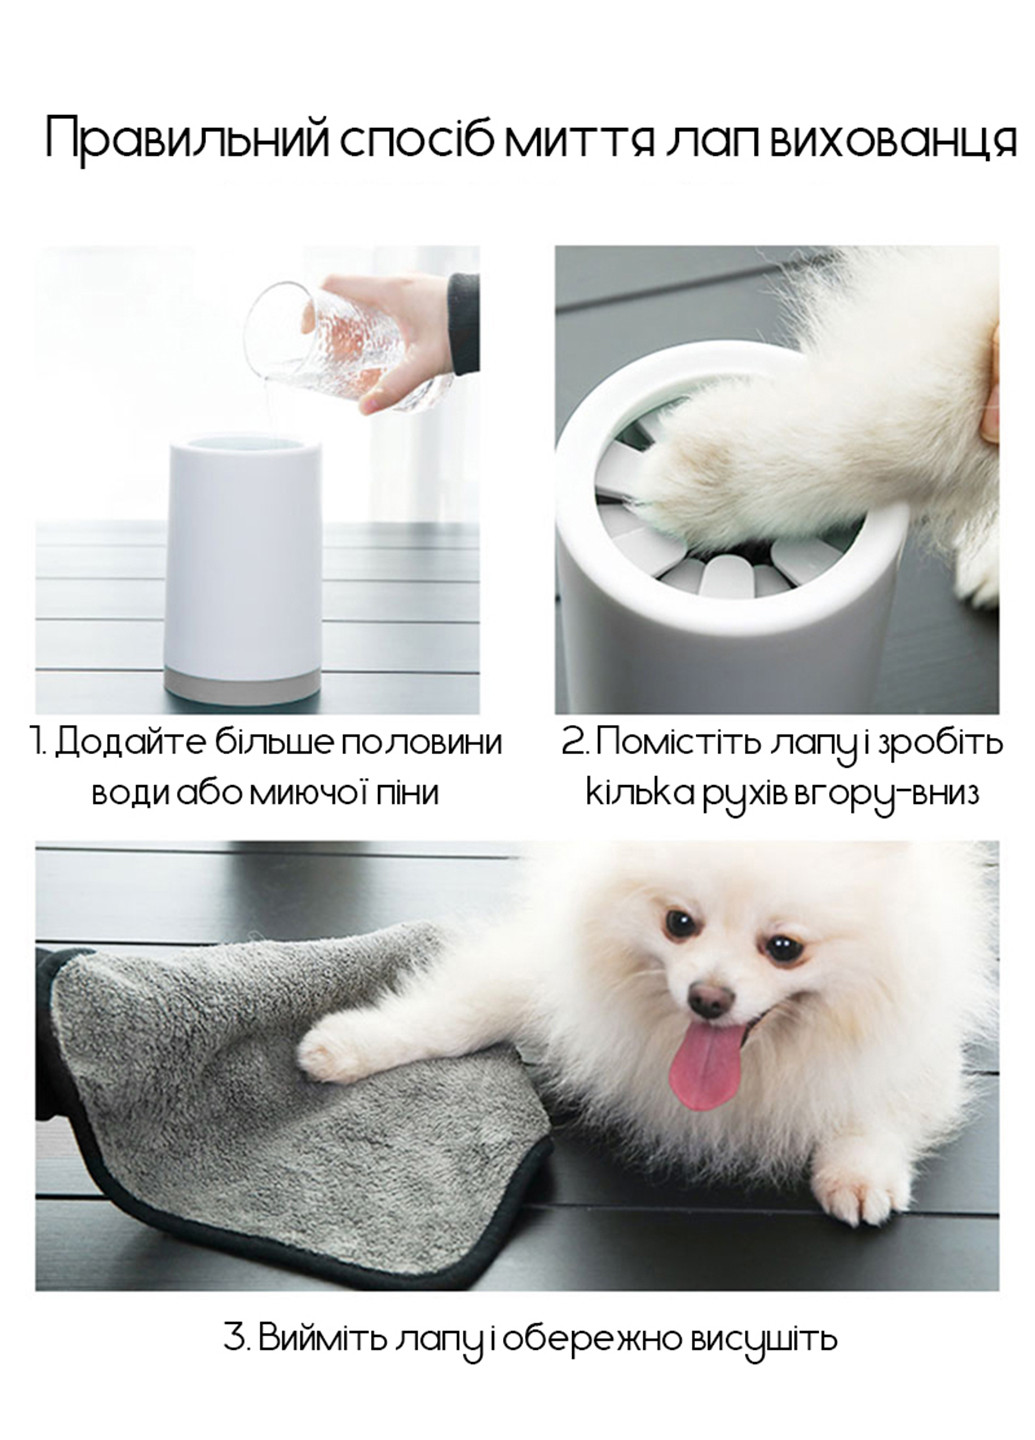 Лапомойка для собак, емкость для мытья лап домашних животных S (9x13 см) Carno (205393559)